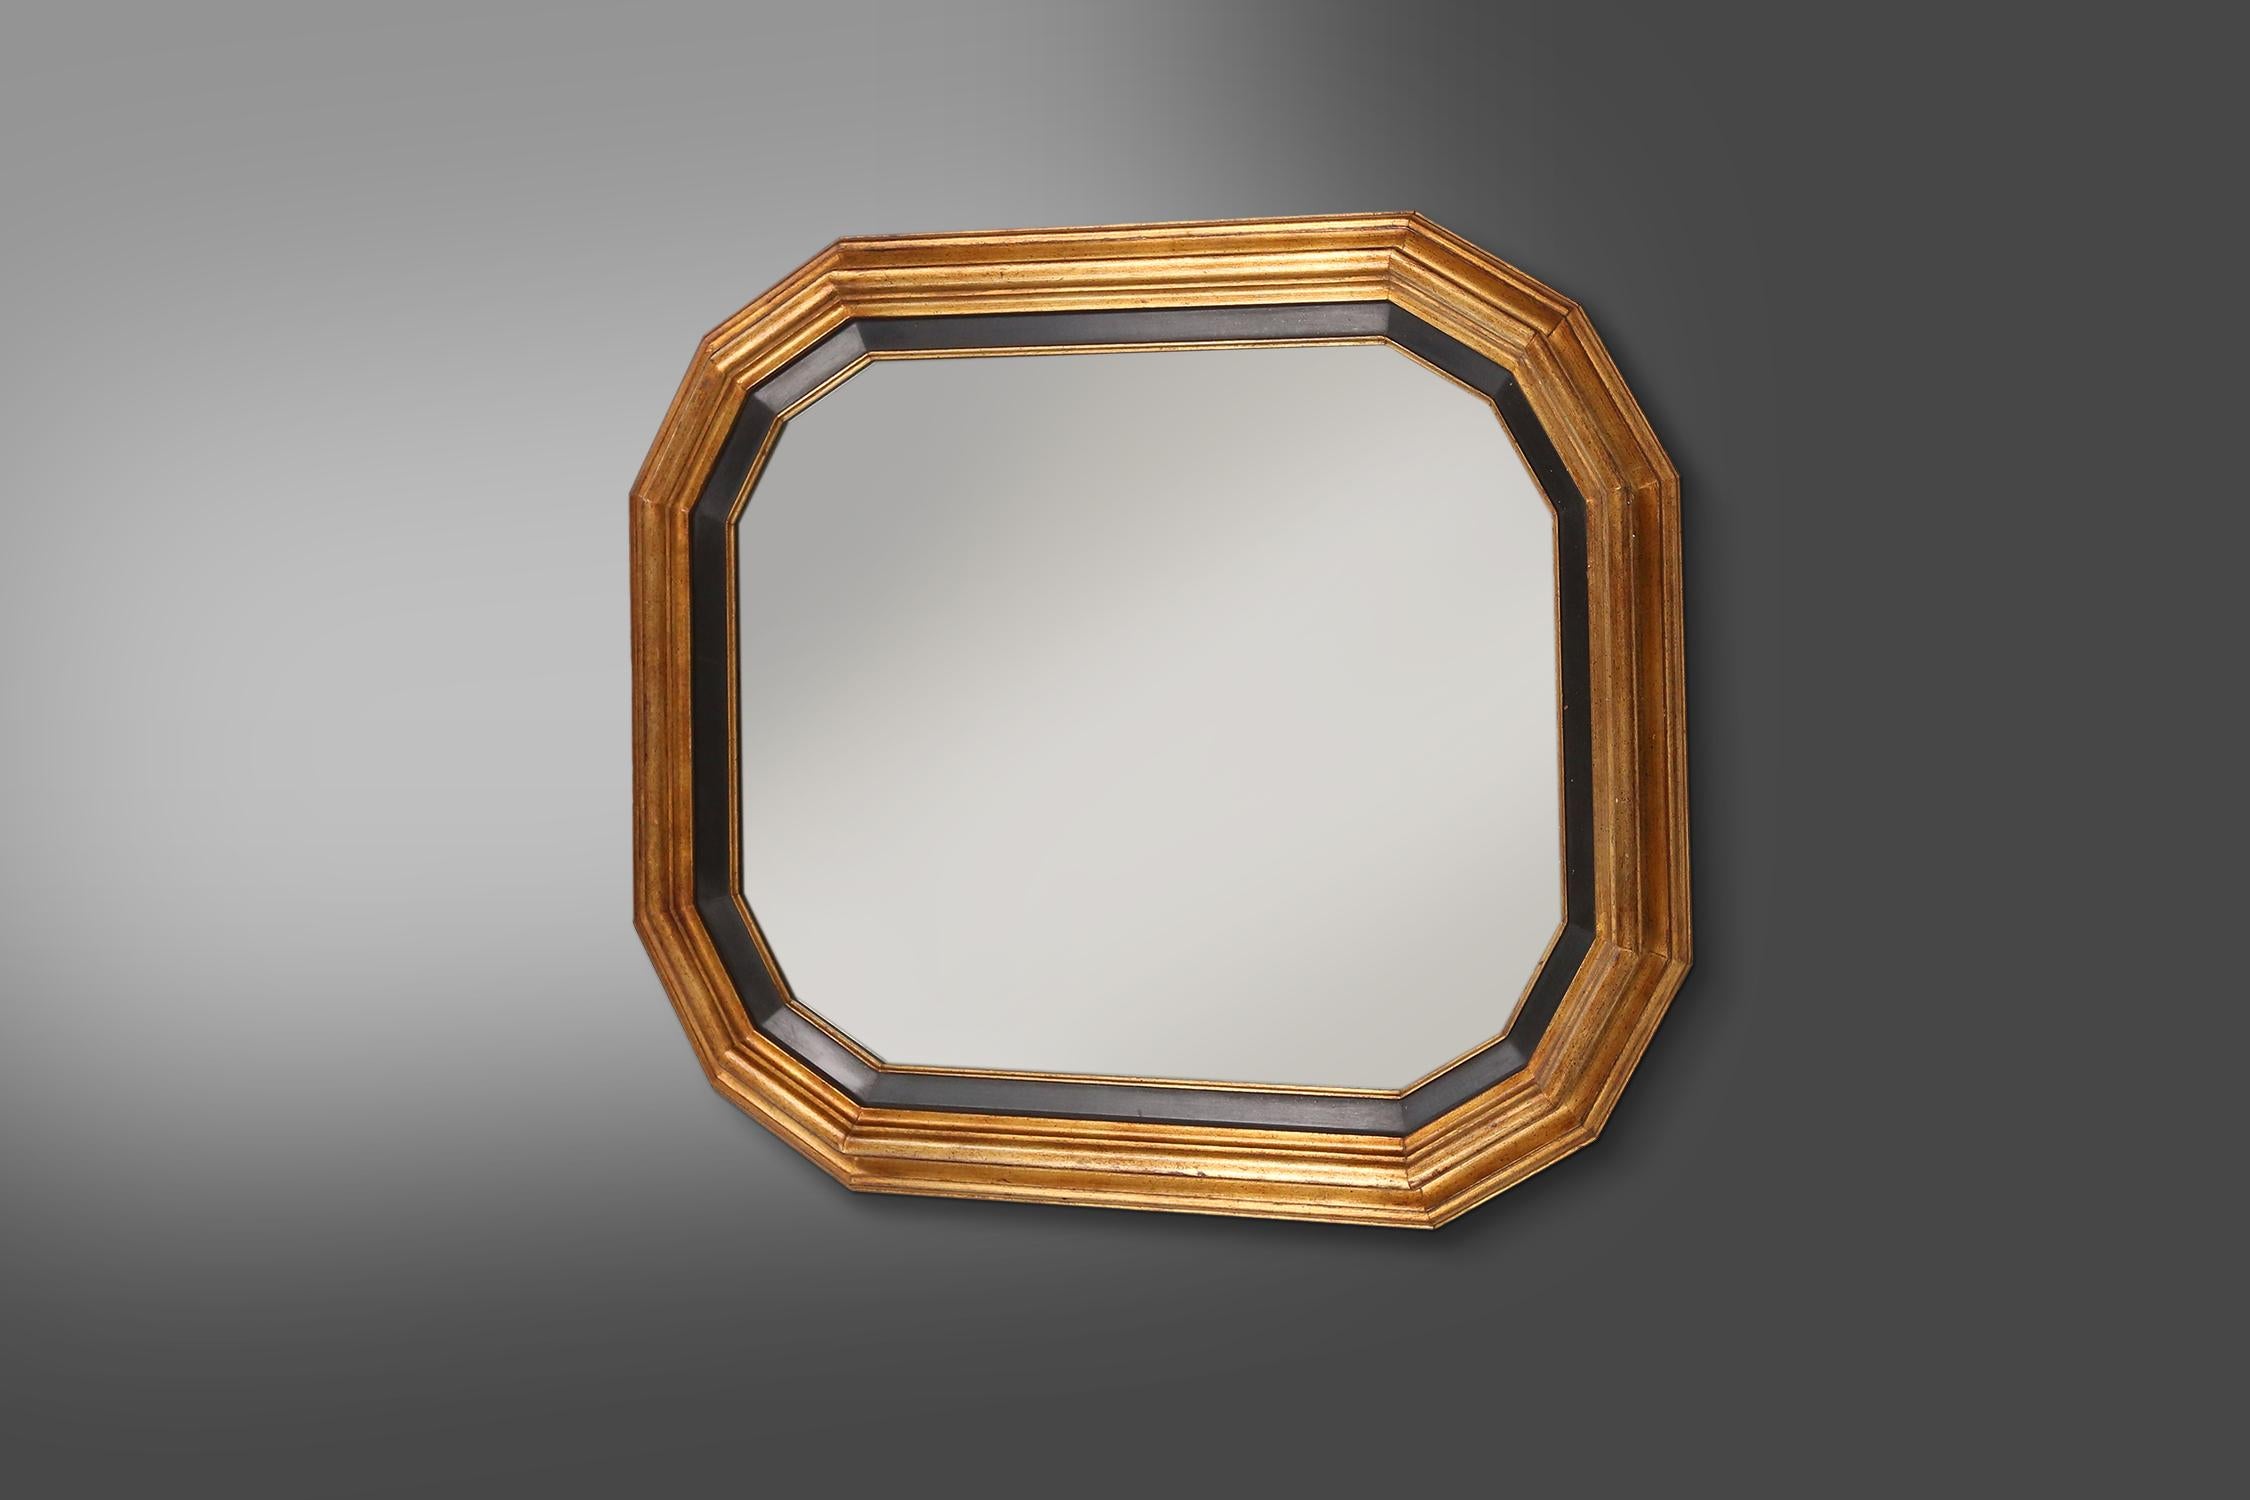 Belgique / 1950s / miroir or et noir / résine / mid-century / vintage

Un grand miroir avec un cadre doré et noir aux lignes élégantes, Belgique, réalisé dans les années 1950. Fabriqué en résine, ce miroir respire le luxe et l'élégance. Le cadre